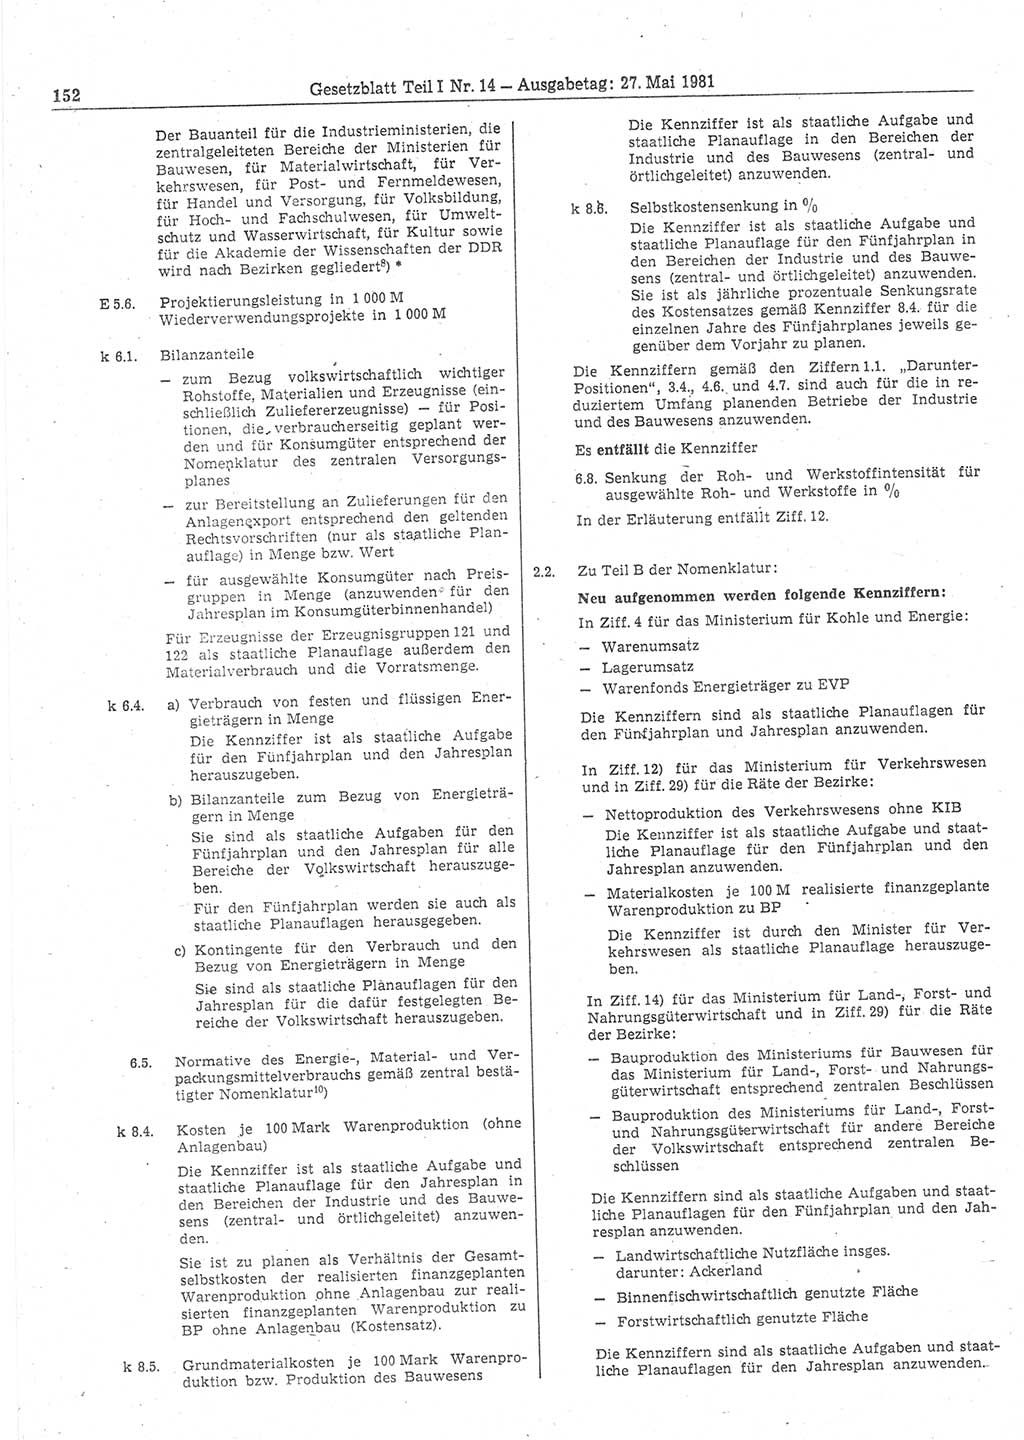 Gesetzblatt (GBl.) der Deutschen Demokratischen Republik (DDR) Teil Ⅰ 1981, Seite 152 (GBl. DDR Ⅰ 1981, S. 152)